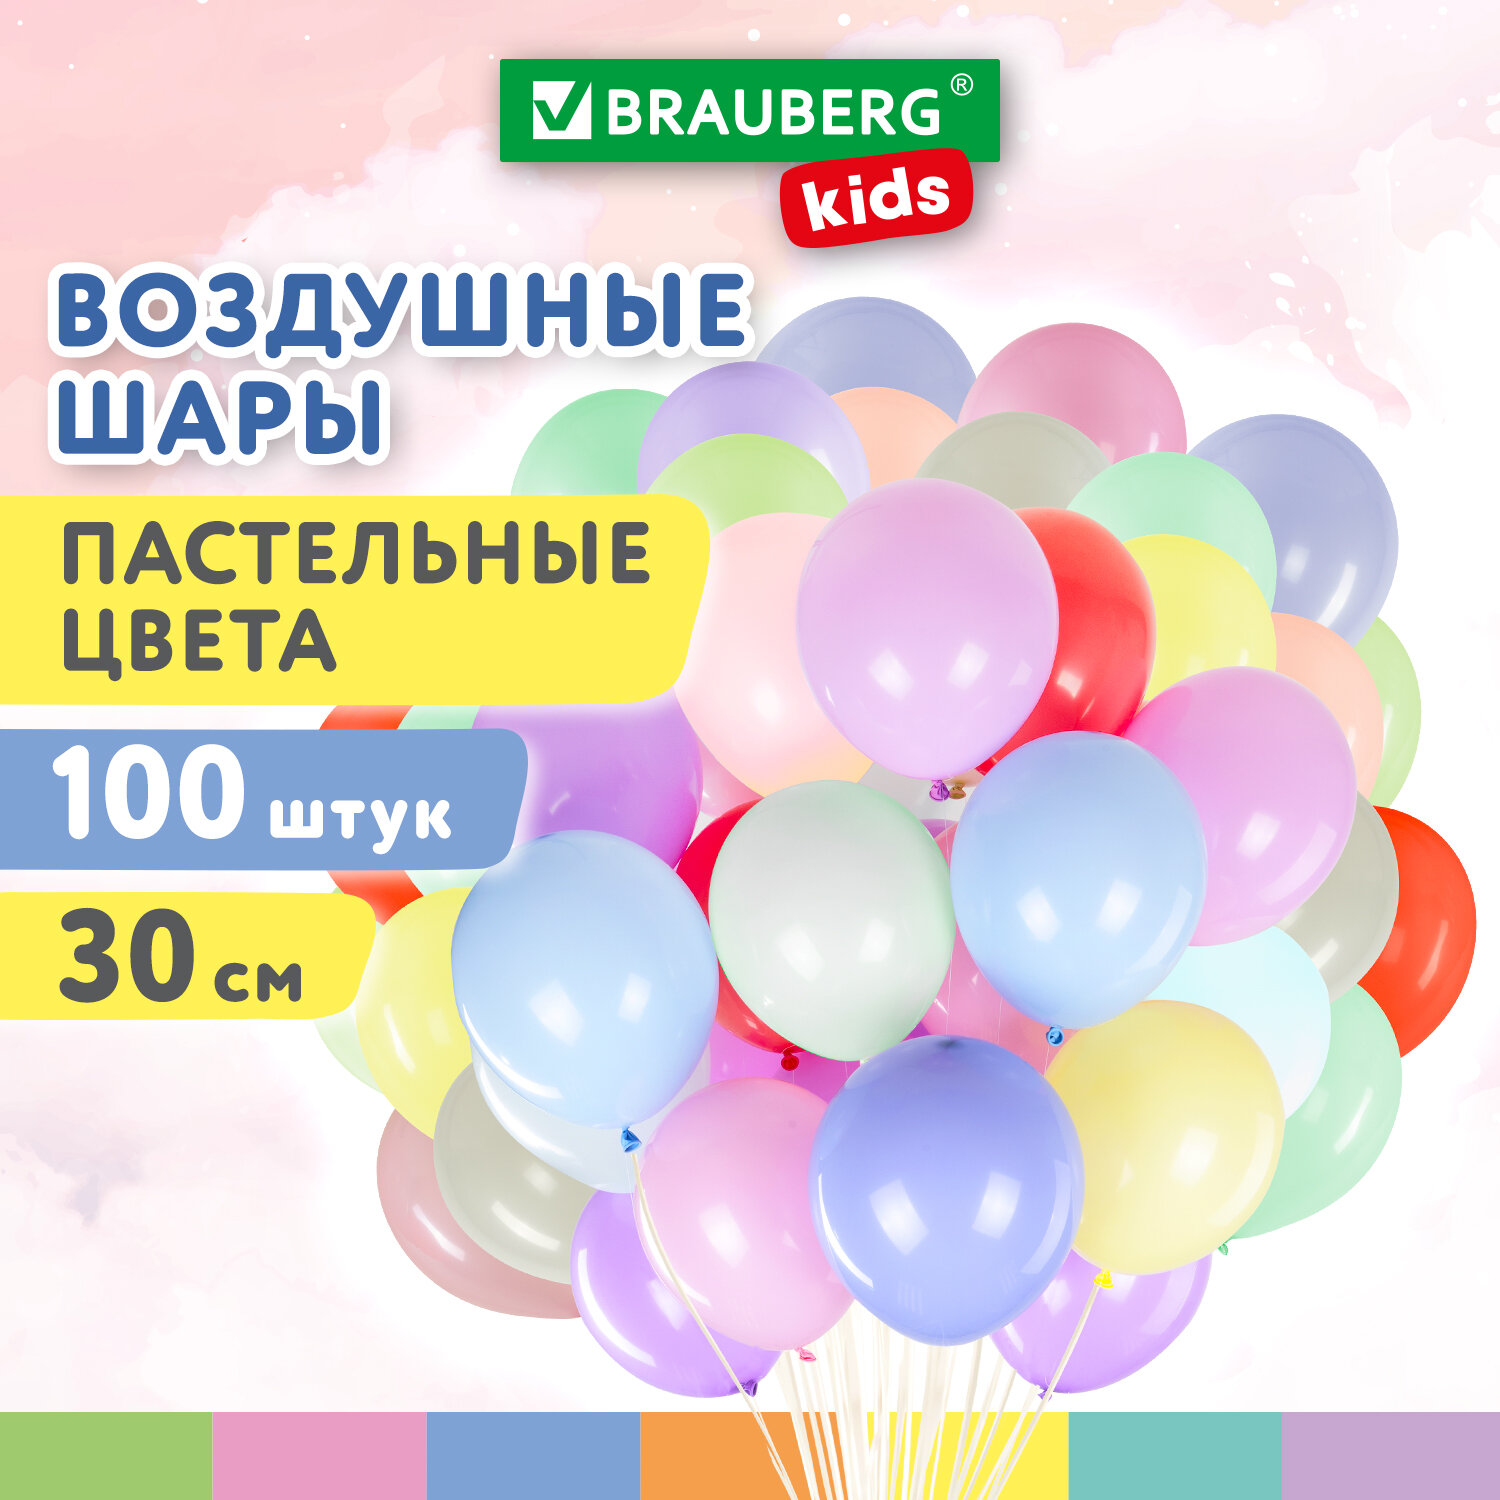 Шарики воздушные Brauberg Kids 591879 набор на день рождения, для фотозоны, 30 см, 100 шт merimeri тарелки день святого валентина малые 8 шт